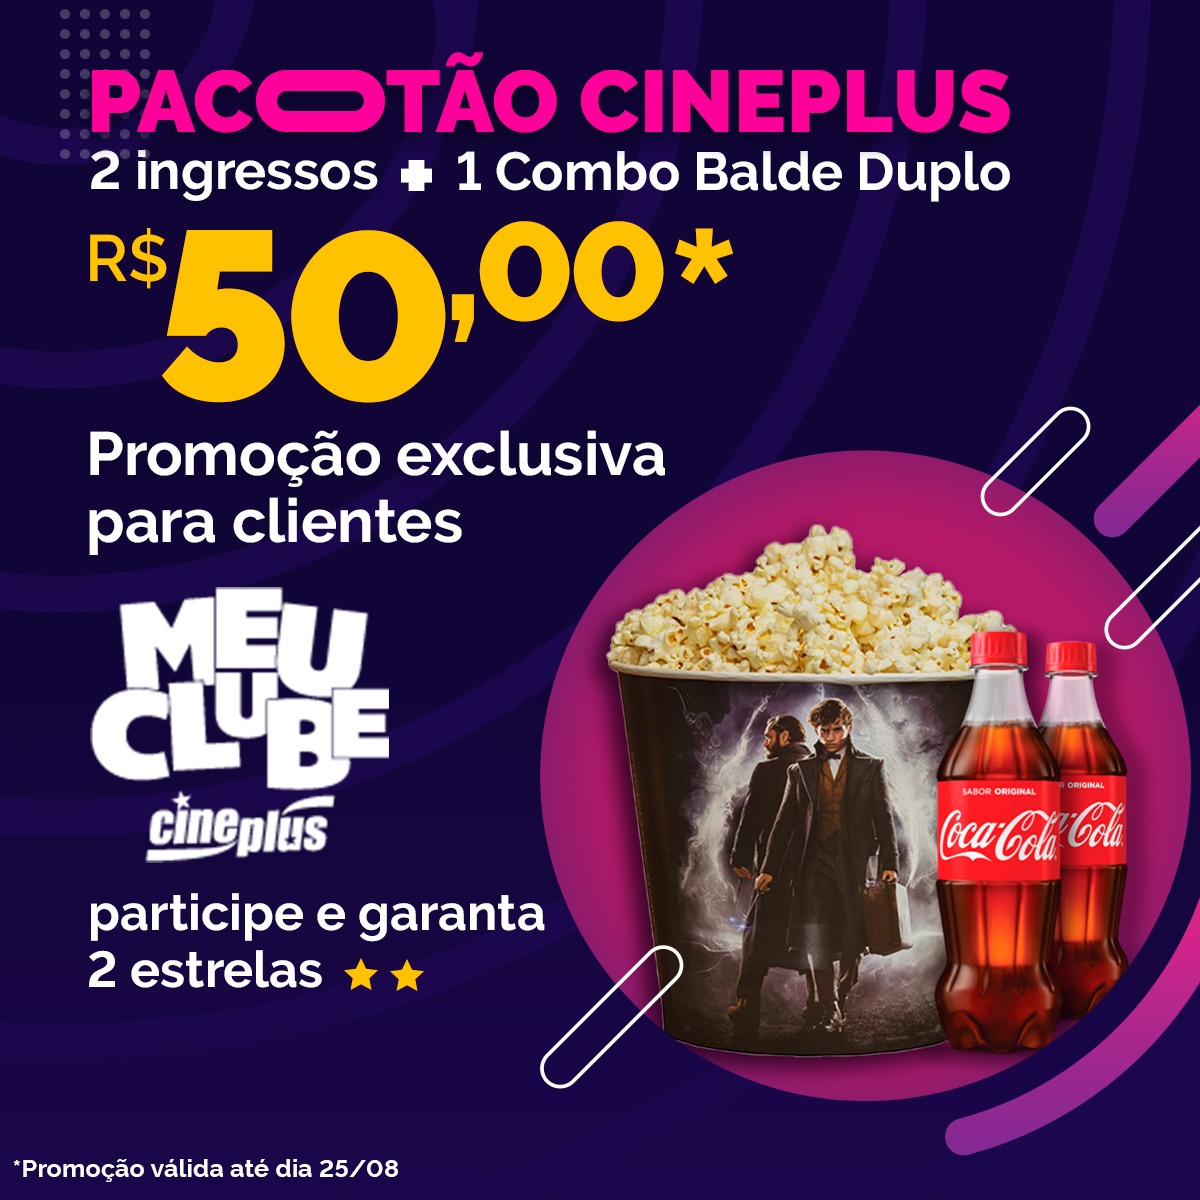 Aproveite o Pacotão Cineplus neste final de semana!